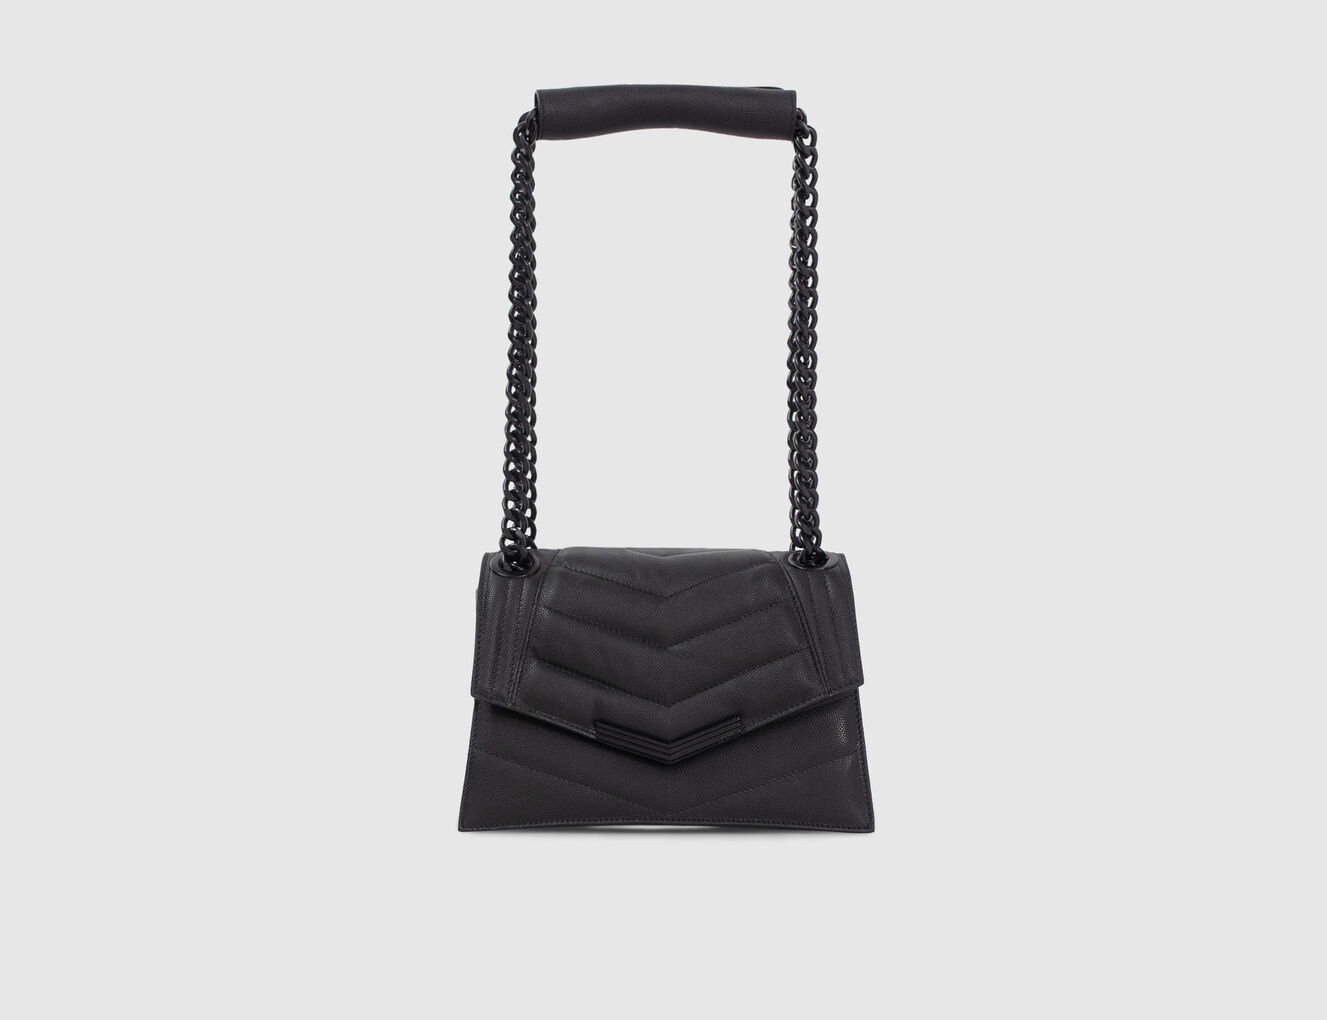 Damentasche THE 1 aus schwarzem Leder Größe S - IKKS-2